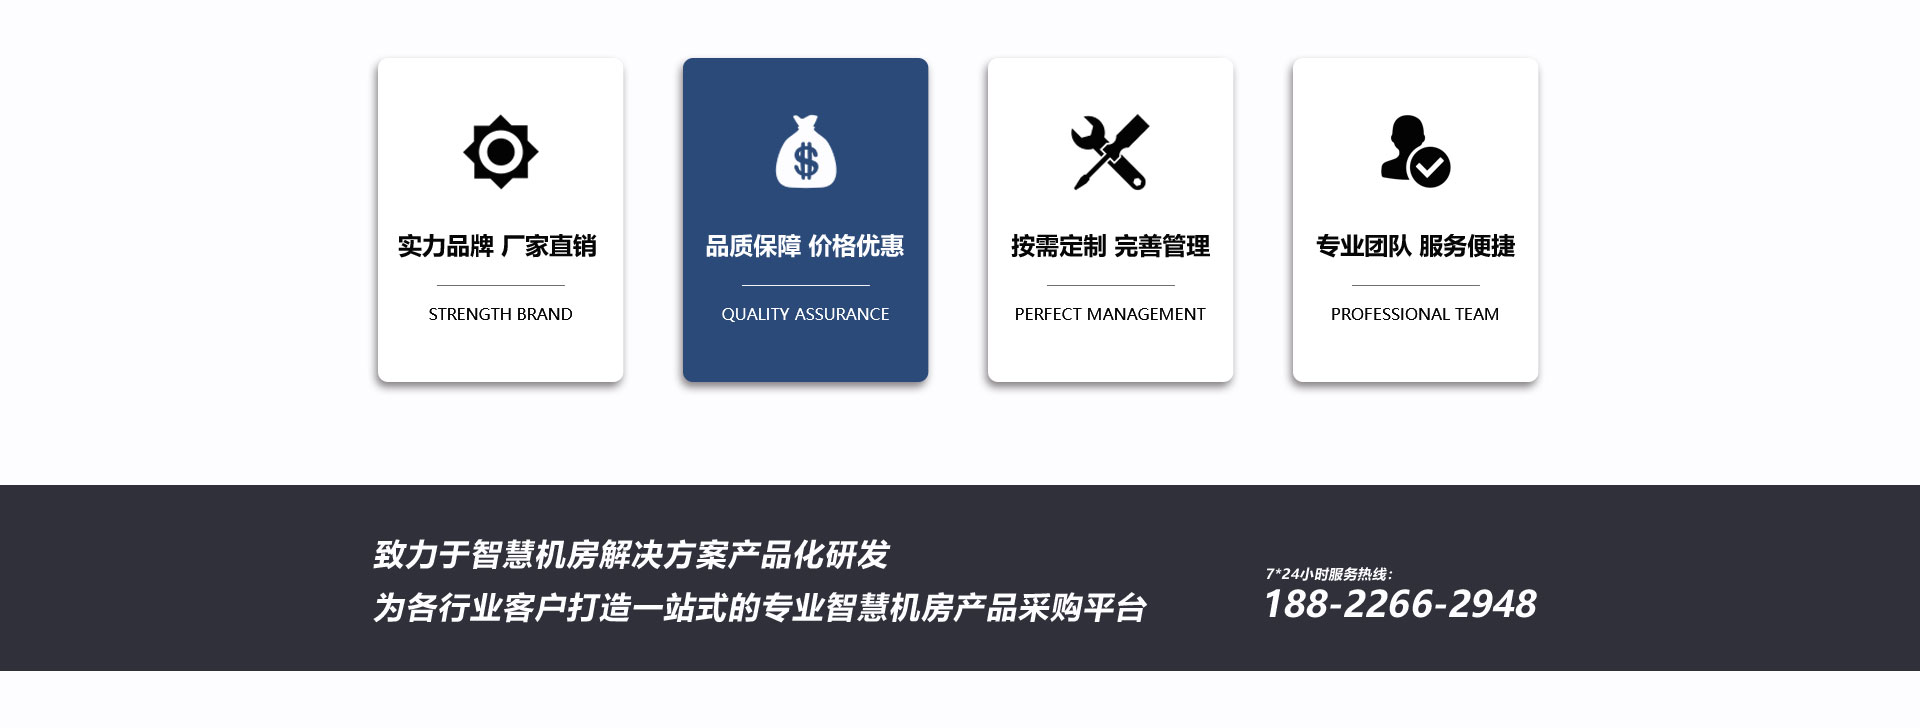 天津网络安博·体育(中国)有限公司官网制造